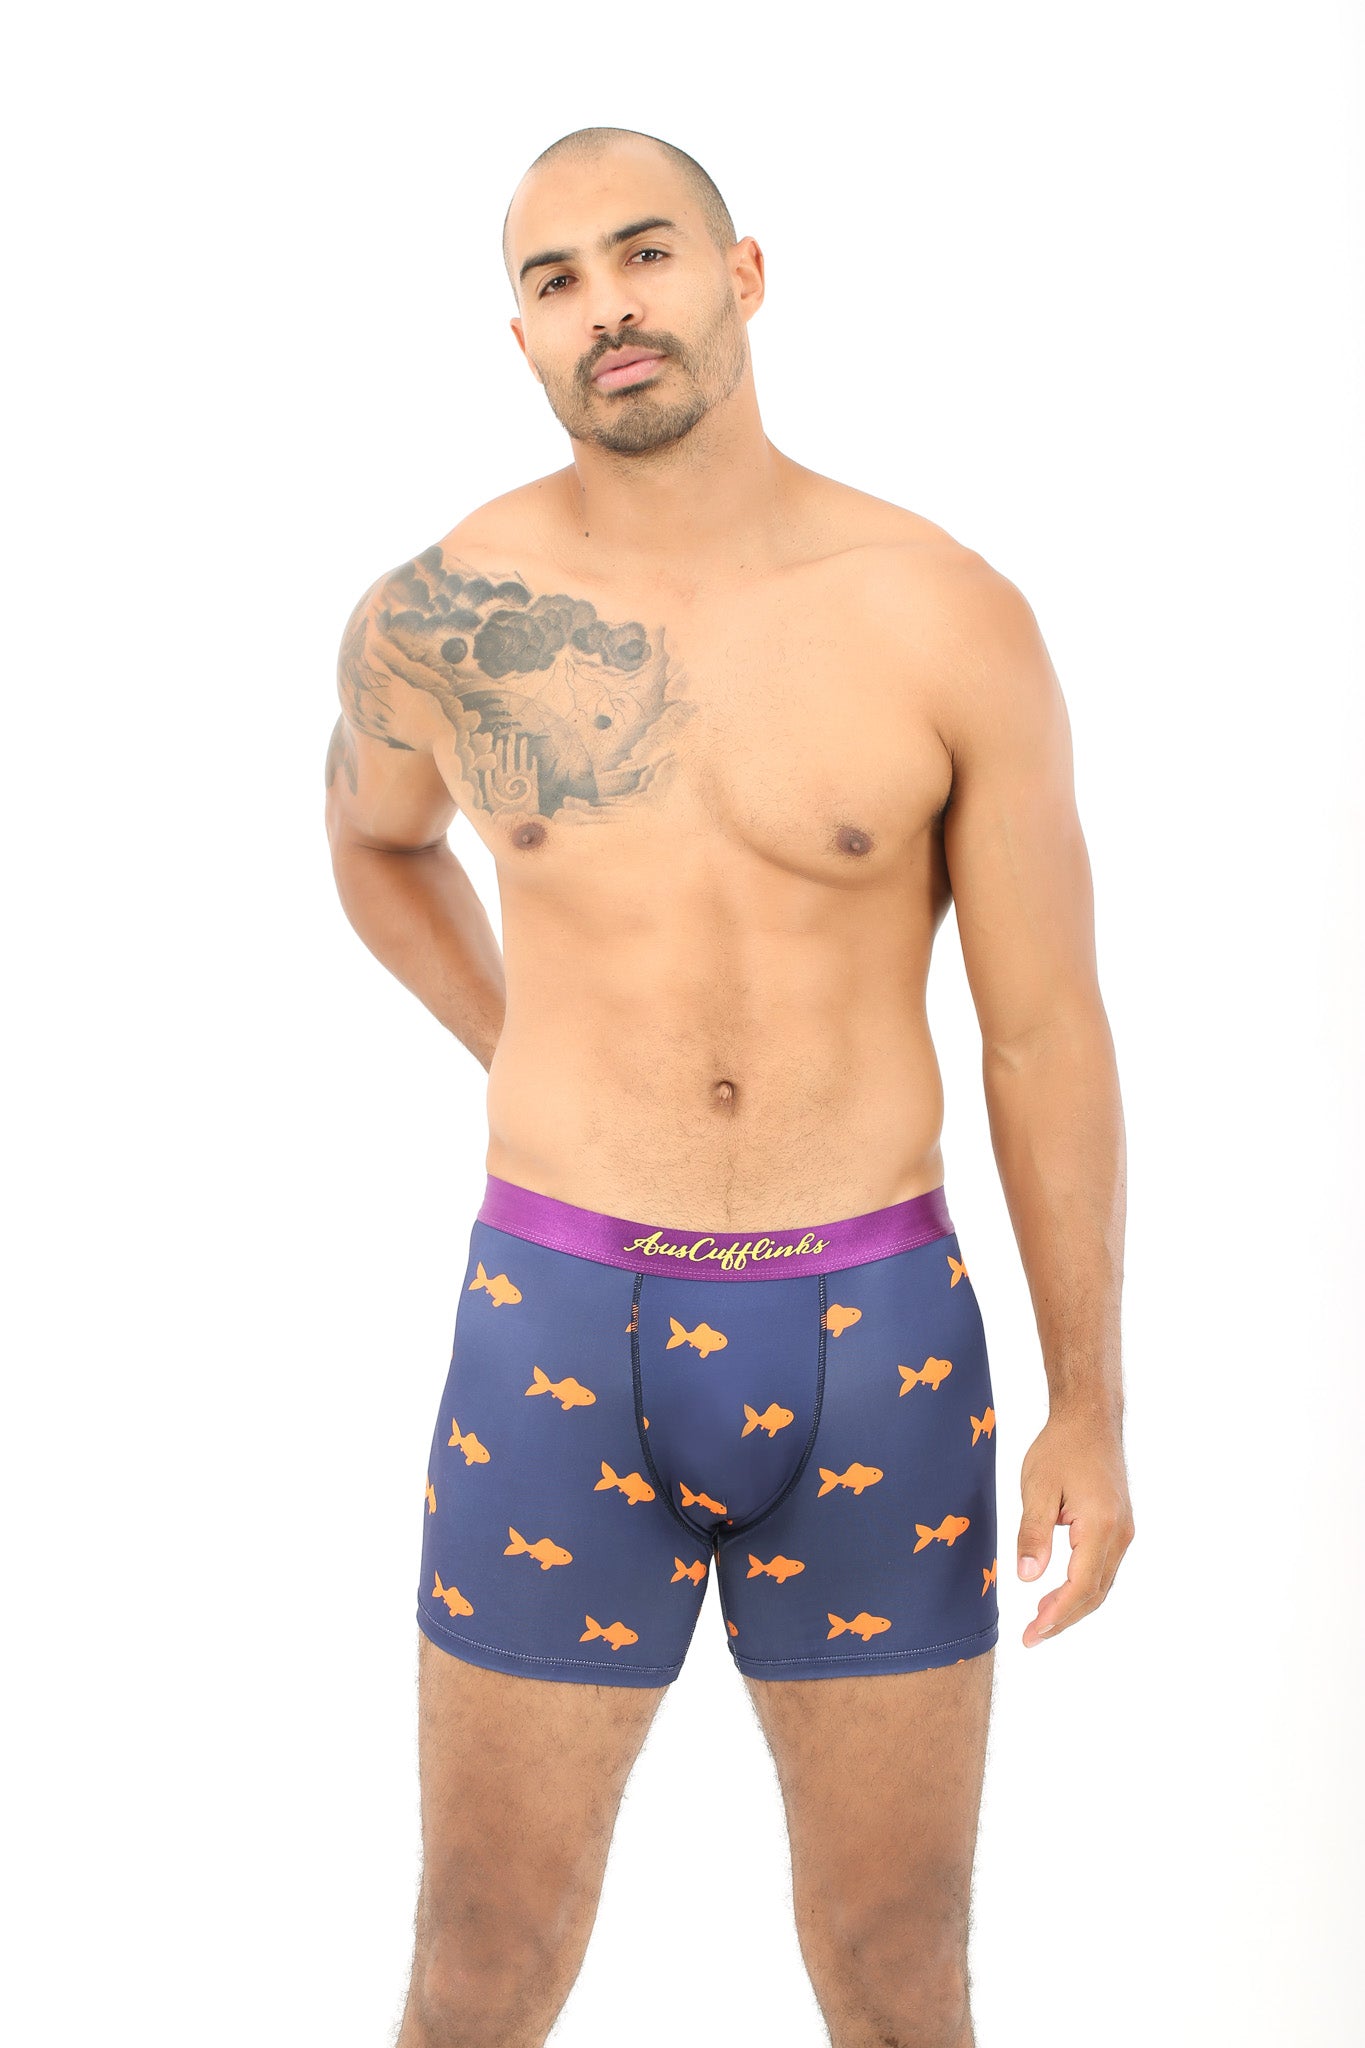 Goldfish Underwear